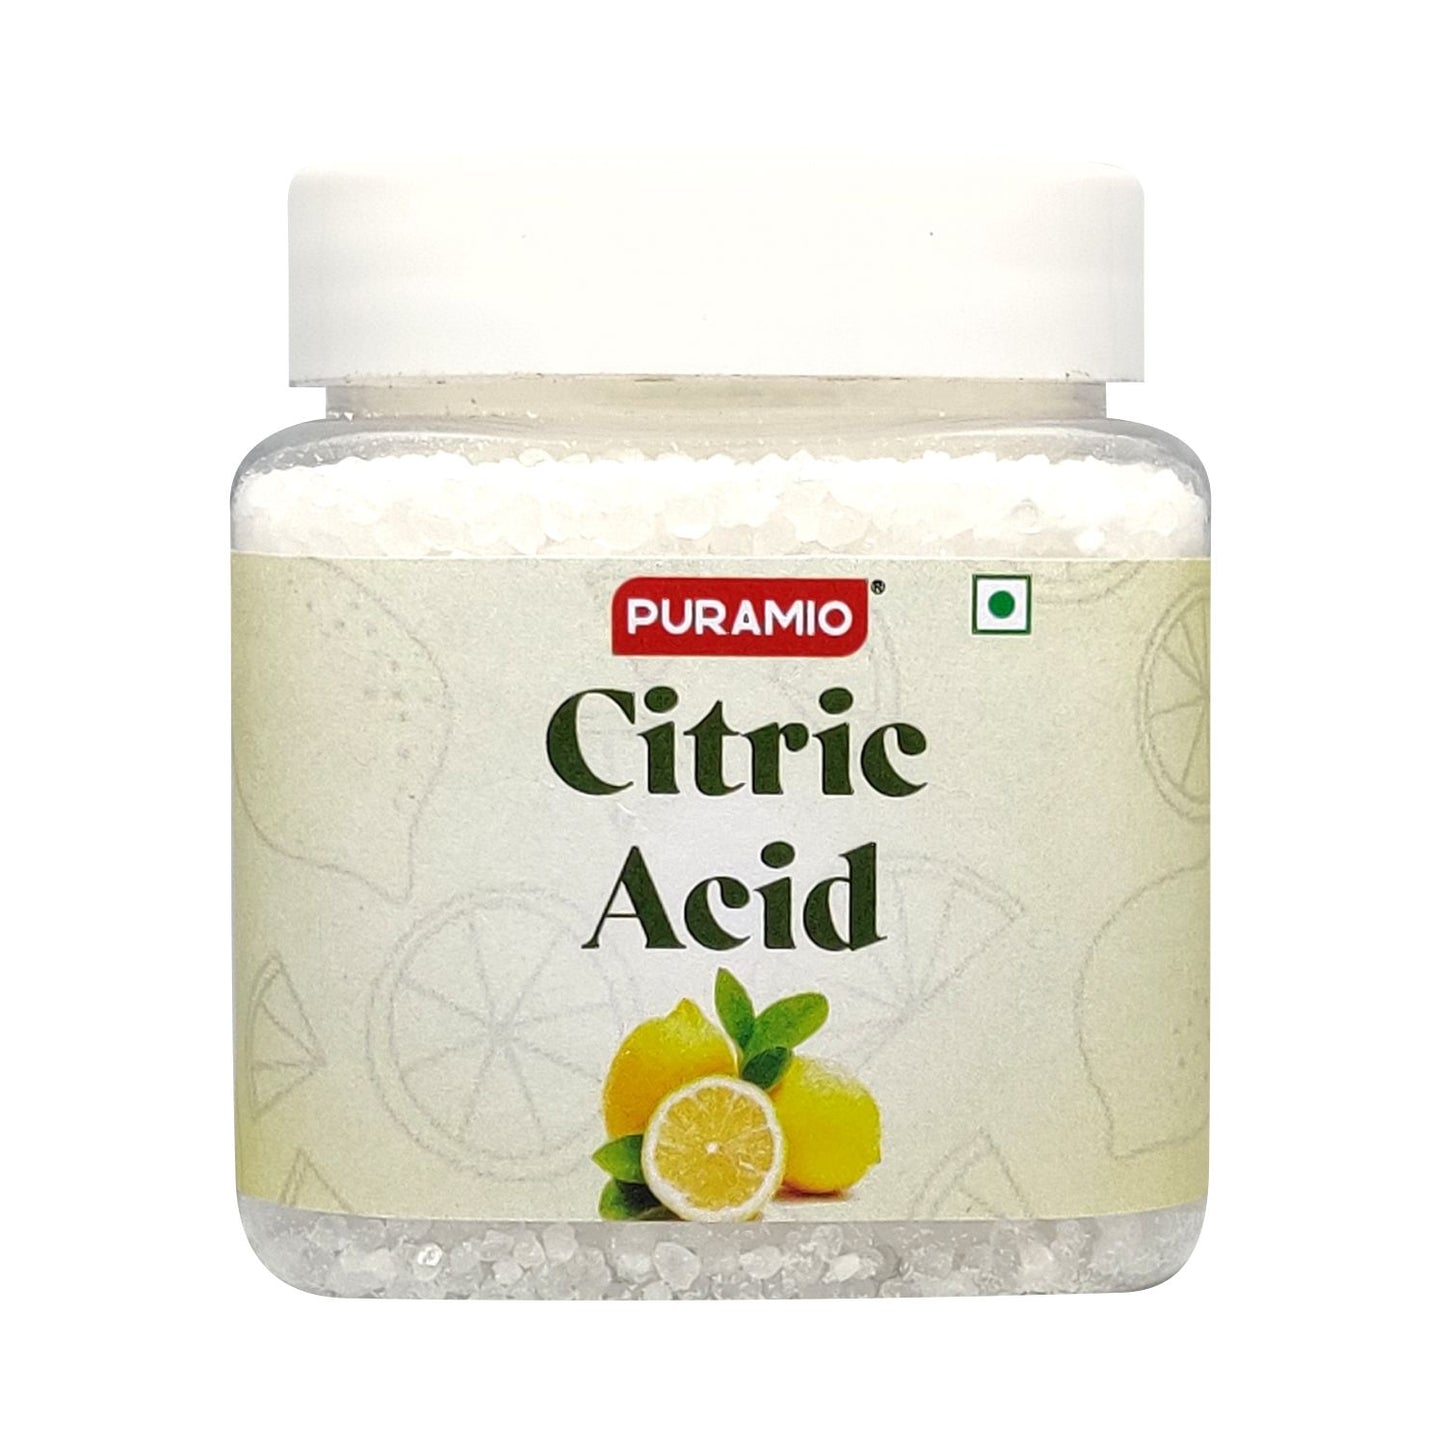 Puramio Citric Acid , 250g